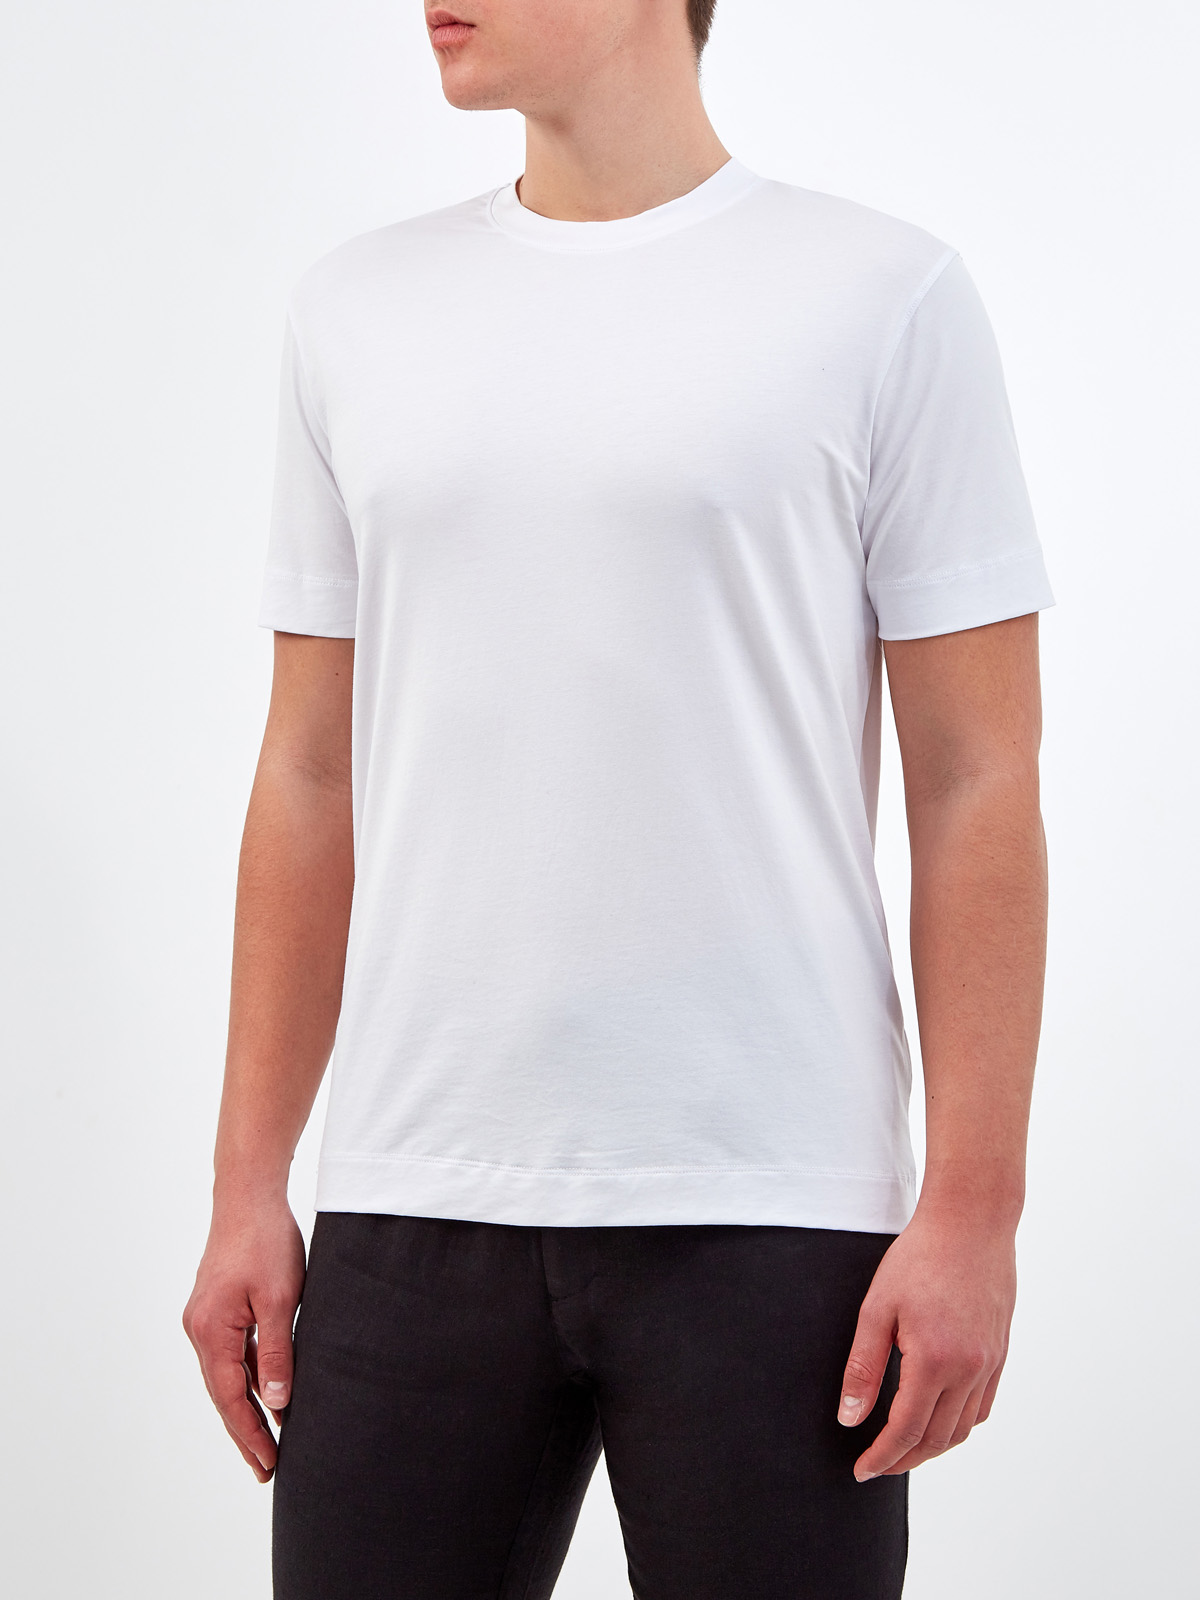 Классическая белая футболка из гладкого джерси CUDGI, цвет белый, размер XL;2XL;3XL;M - фото 3